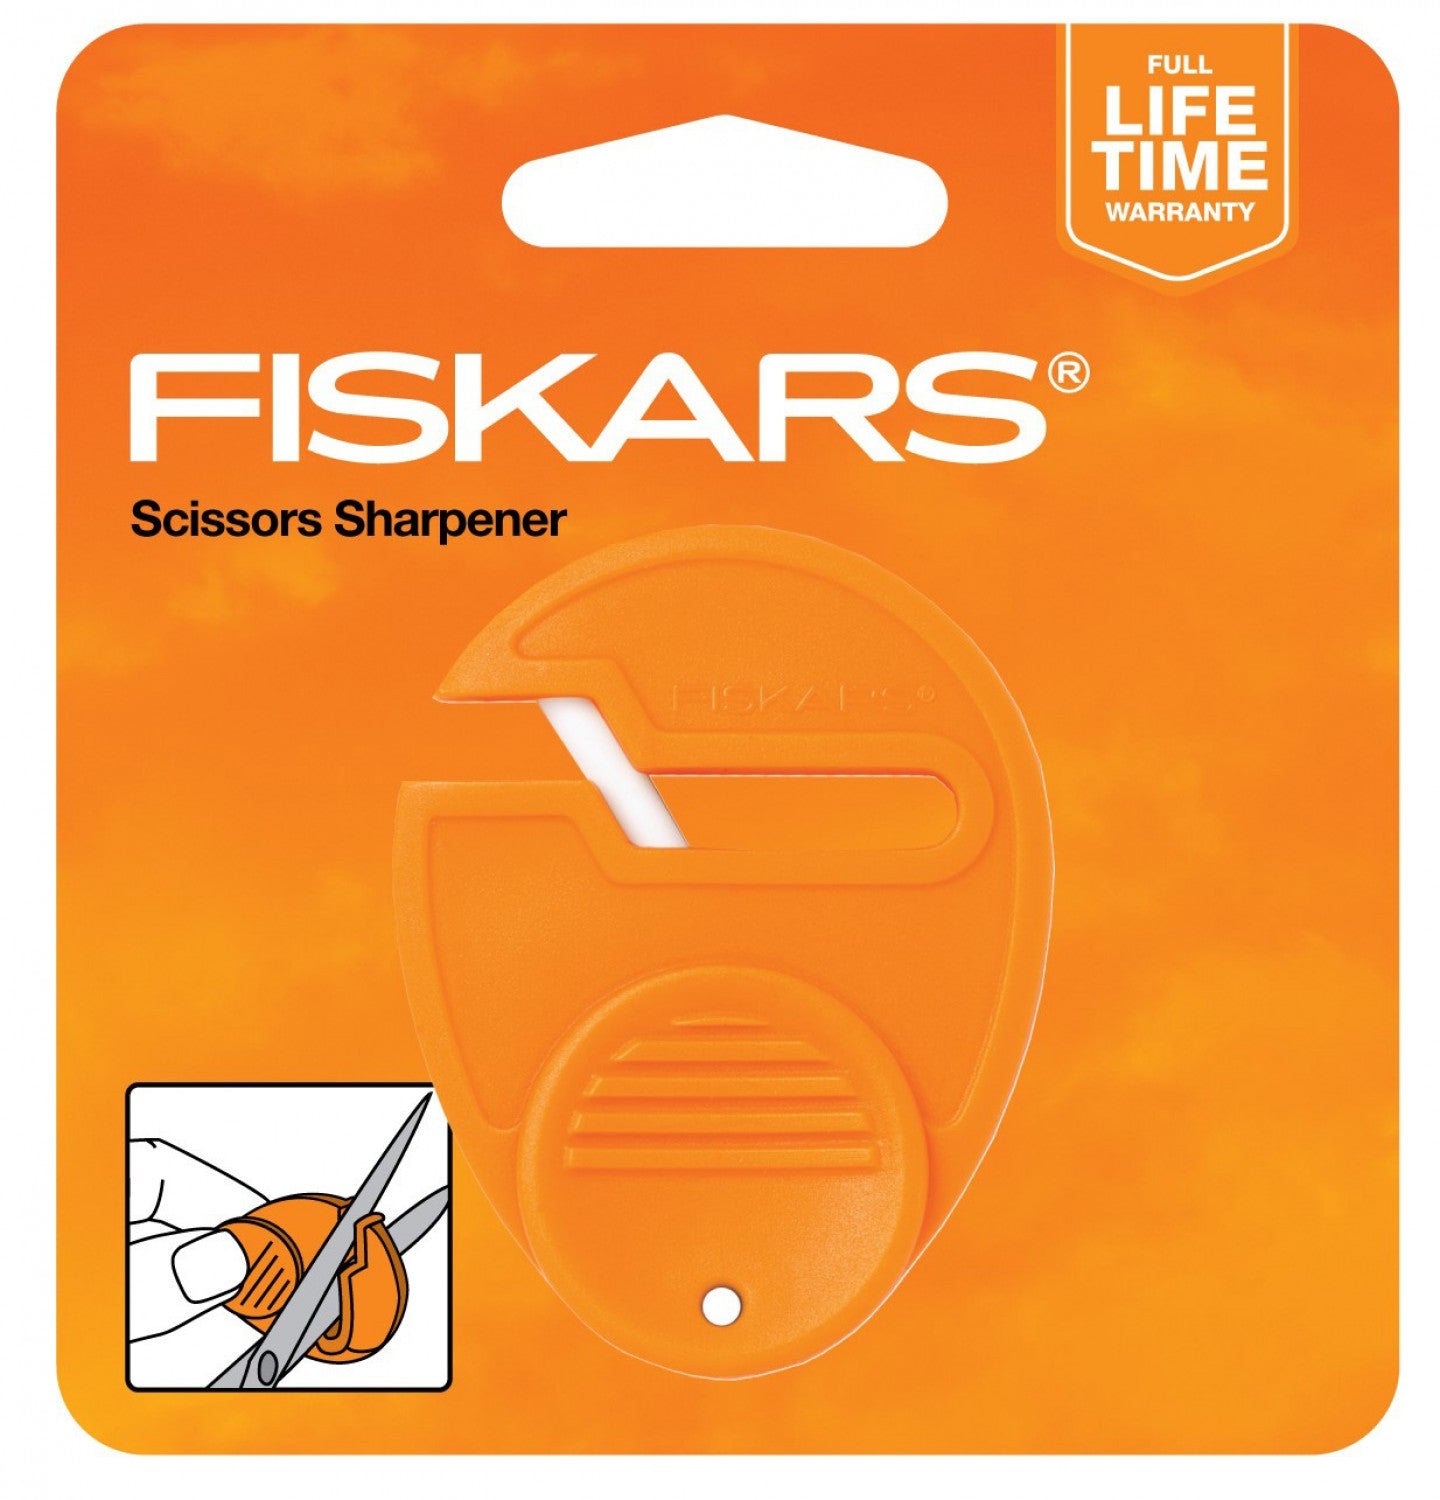 Fisker's SewSharp Scissors Sharpener